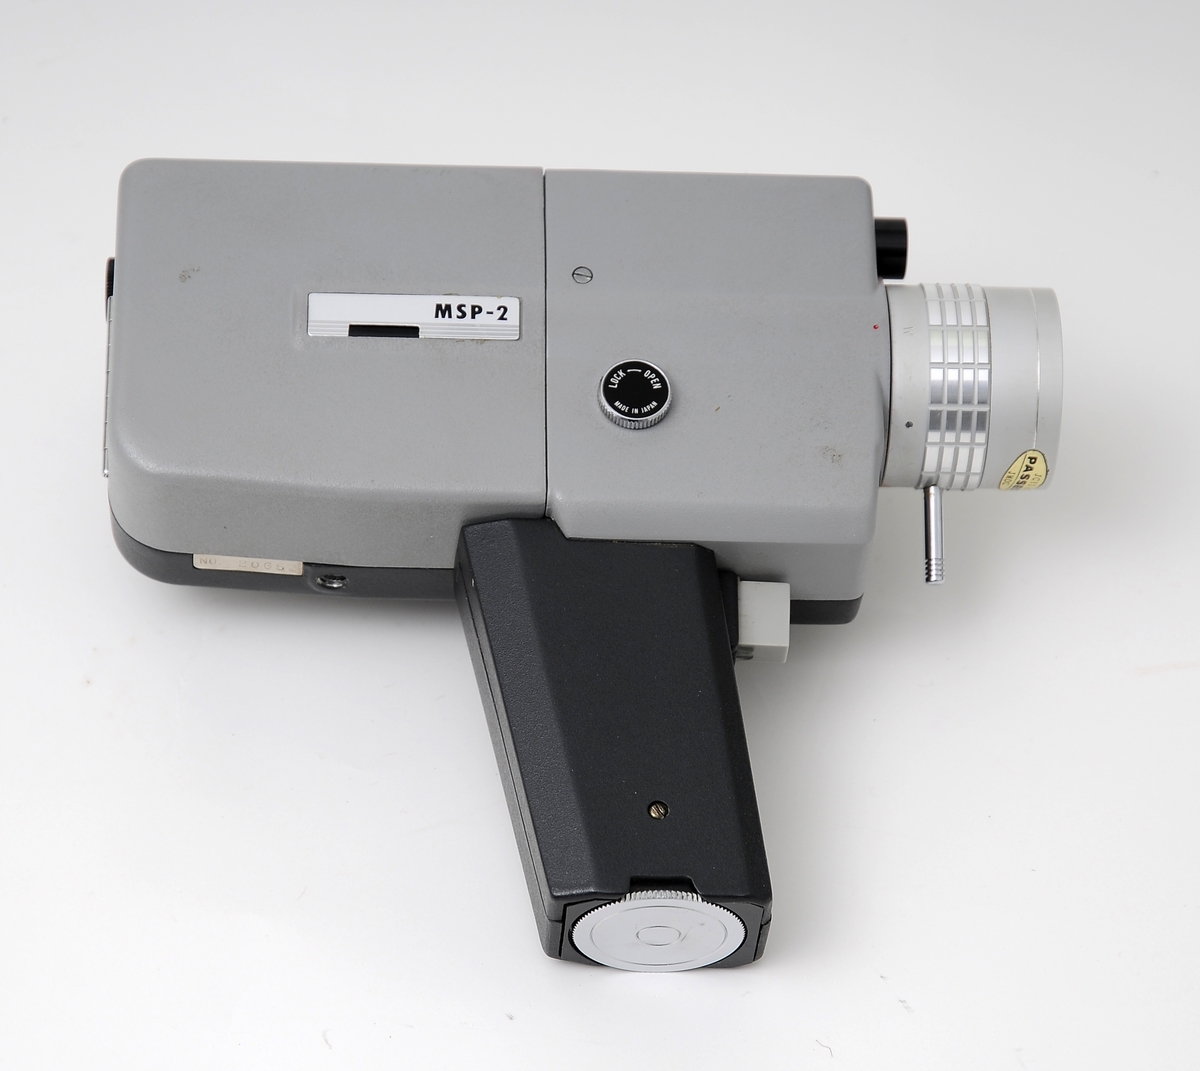 Filmkamera, merke Kalimar super 8, håndholdt filmkamera i etui uten lyd og med zoom 2 x. Det er plass til fire AA batterier i håndtaket. Manuell innstilling av fokus og skarpstilling.